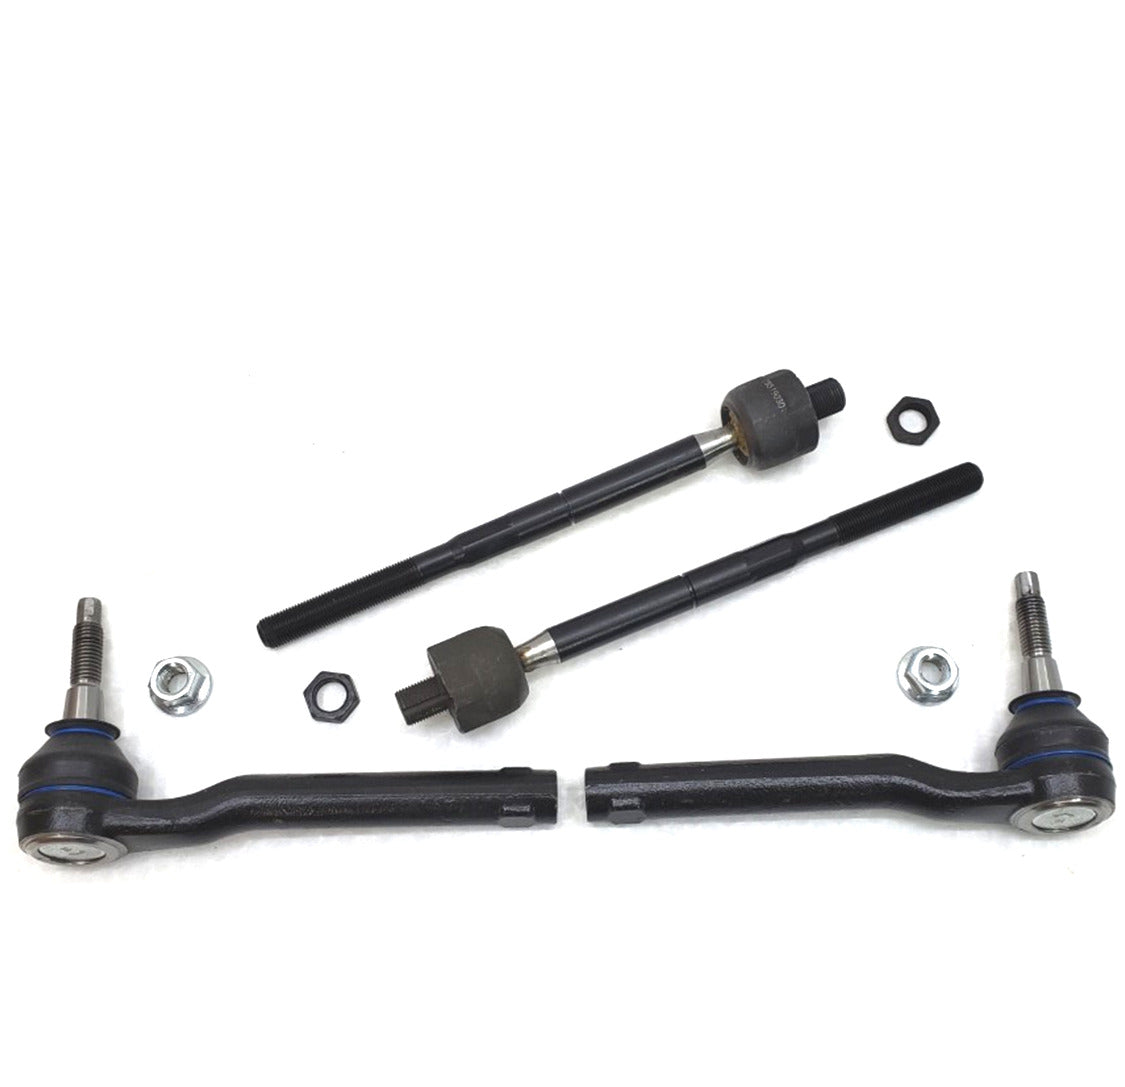 HD Inner & Outer Tie Rod Steering Kit for 2010-2014 Ford F150 SVT Raptor 6.2L V8 4x4